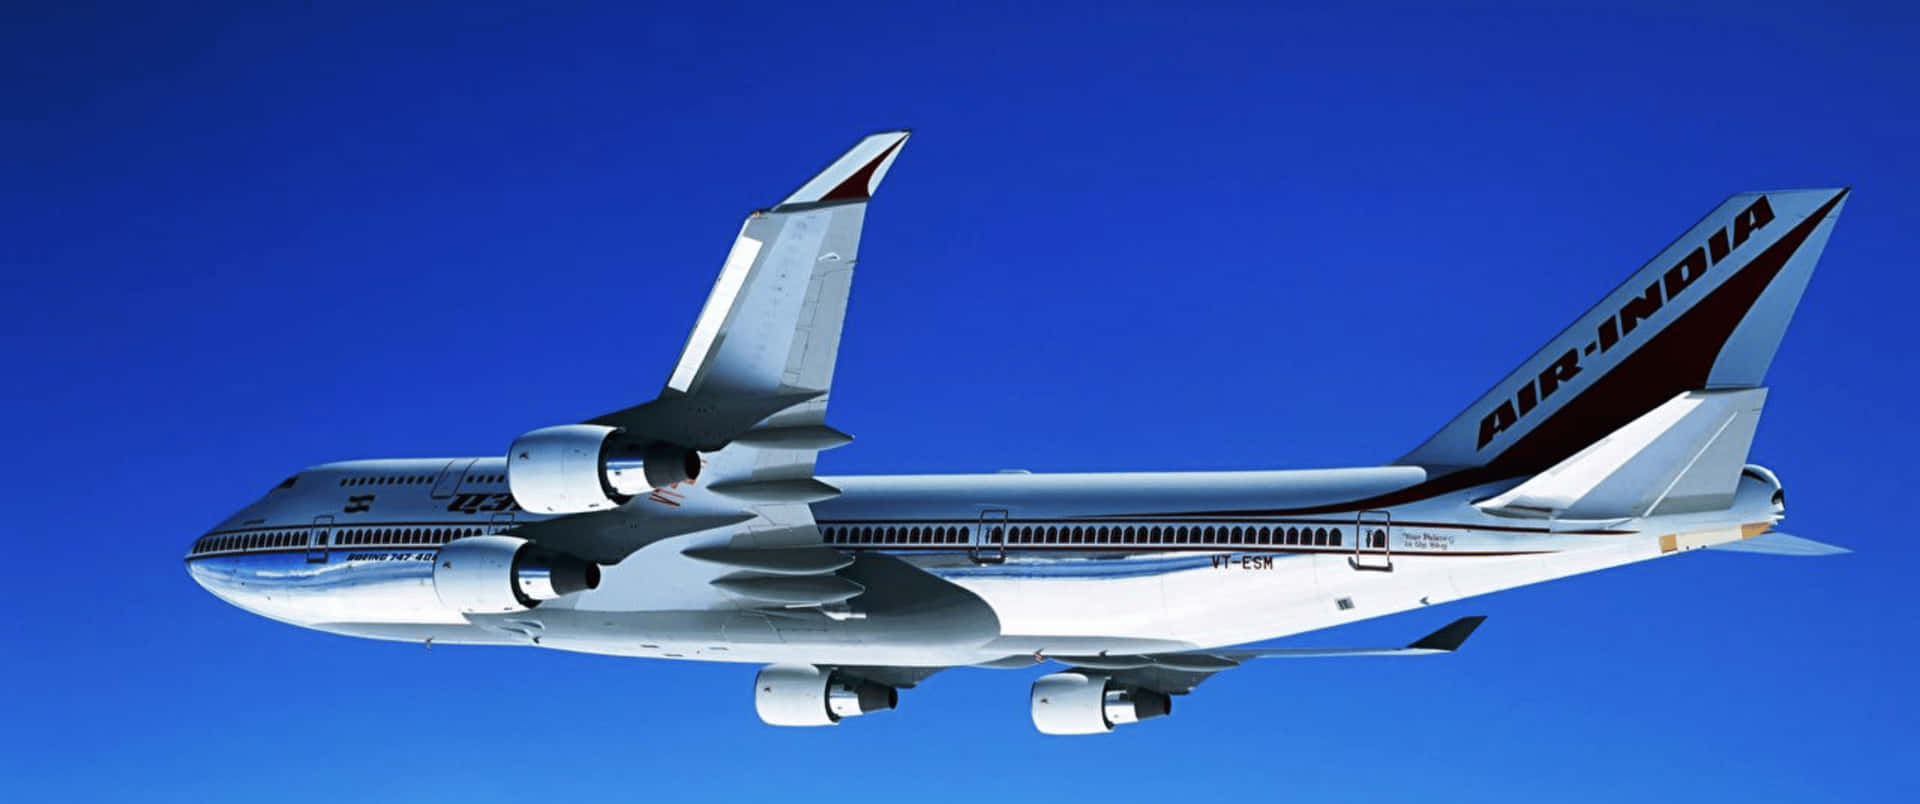 Fondode Pantalla Del Avión Boeing 747-400 En Resolución 3440x1440p.